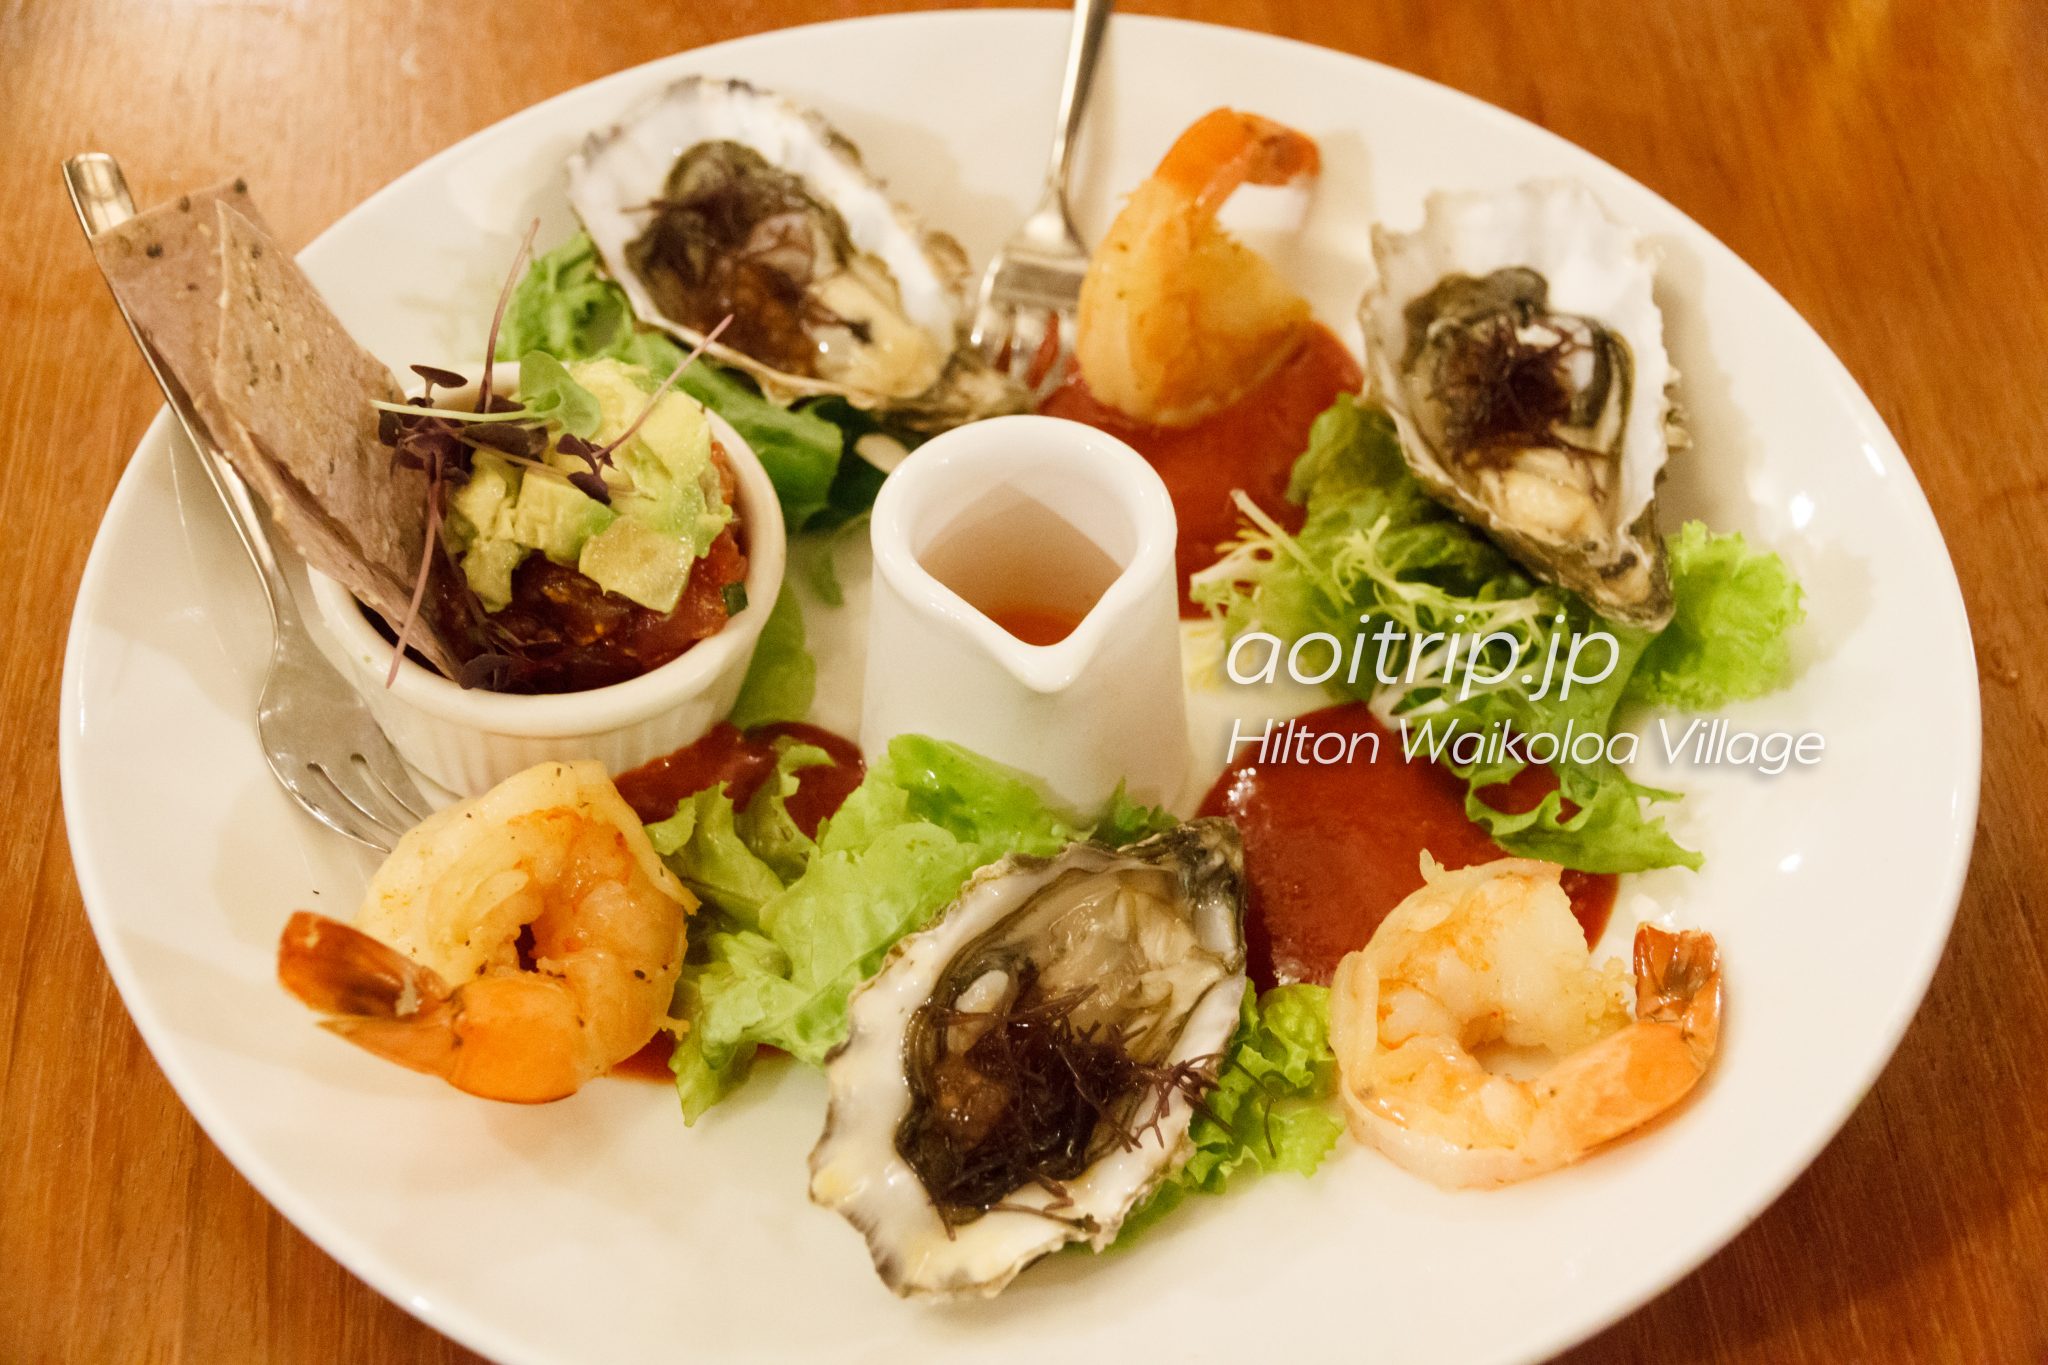 ヒルトン ワイコロア ビレッジ（Hilton Waikoloa Village）Chilled Ocean Sampler（$36.00）。 ジャンボシュリンプ、マグロのポケ、生牡蠣